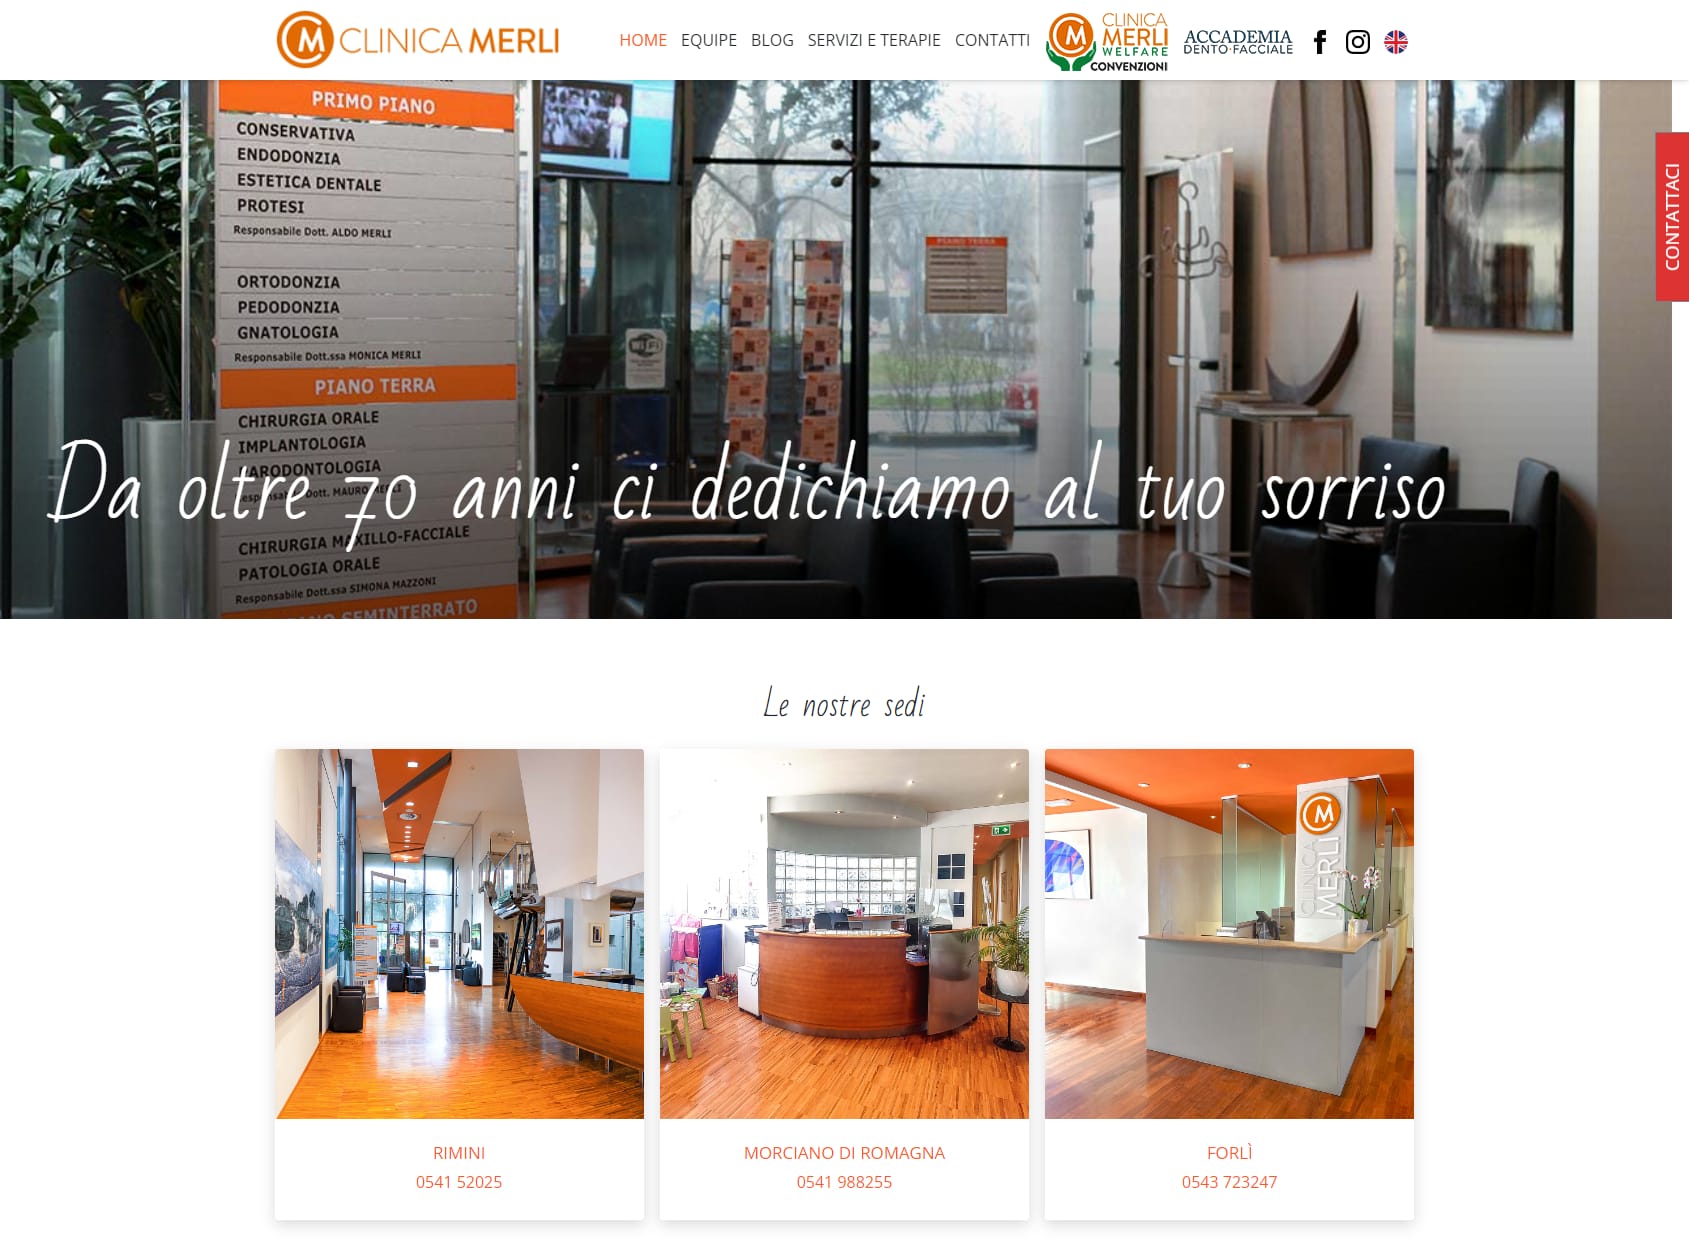 Clinica Merli in Rimini